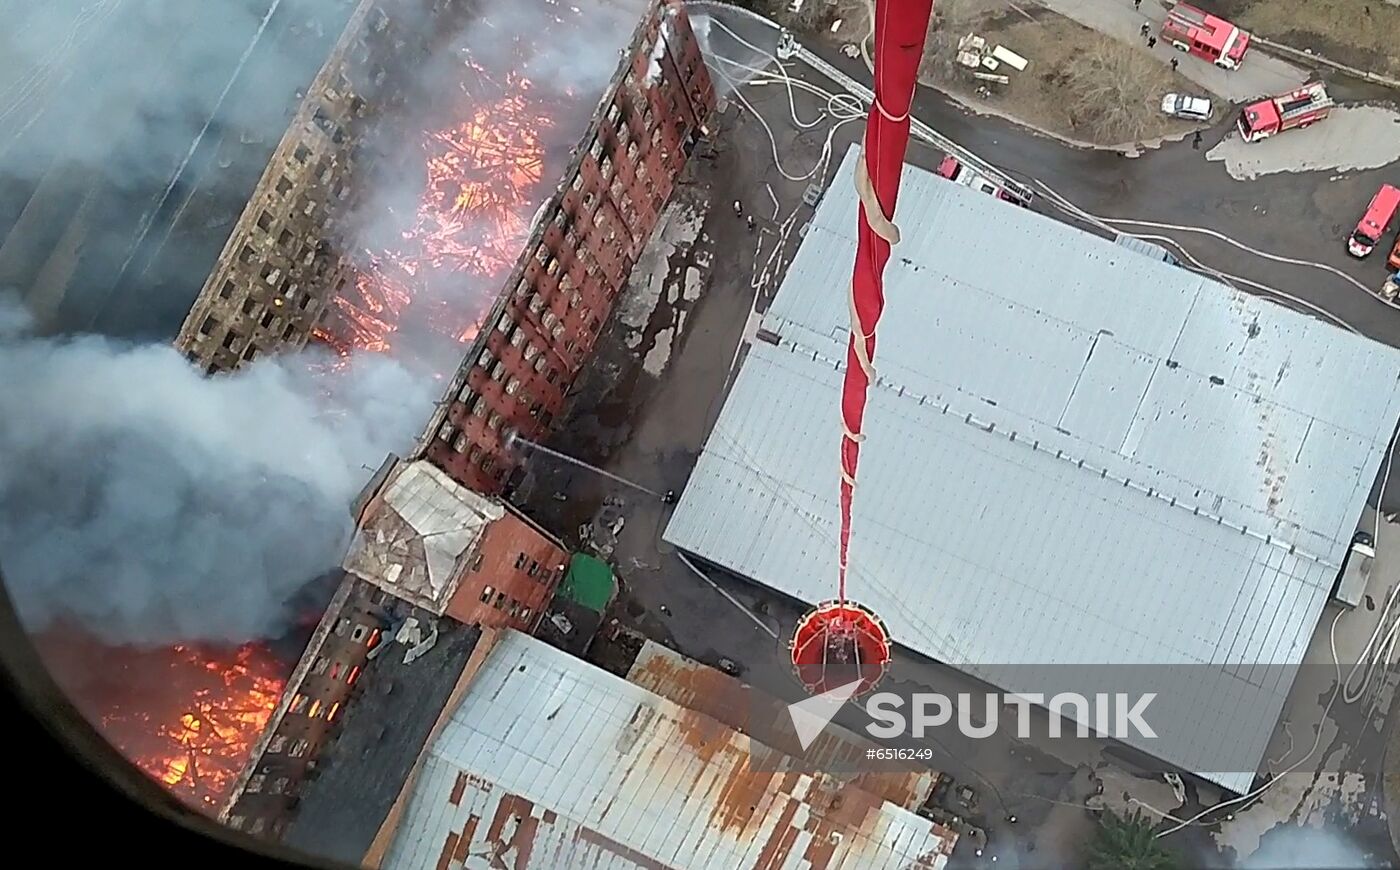 Russia Nevsky Manufactory Fire